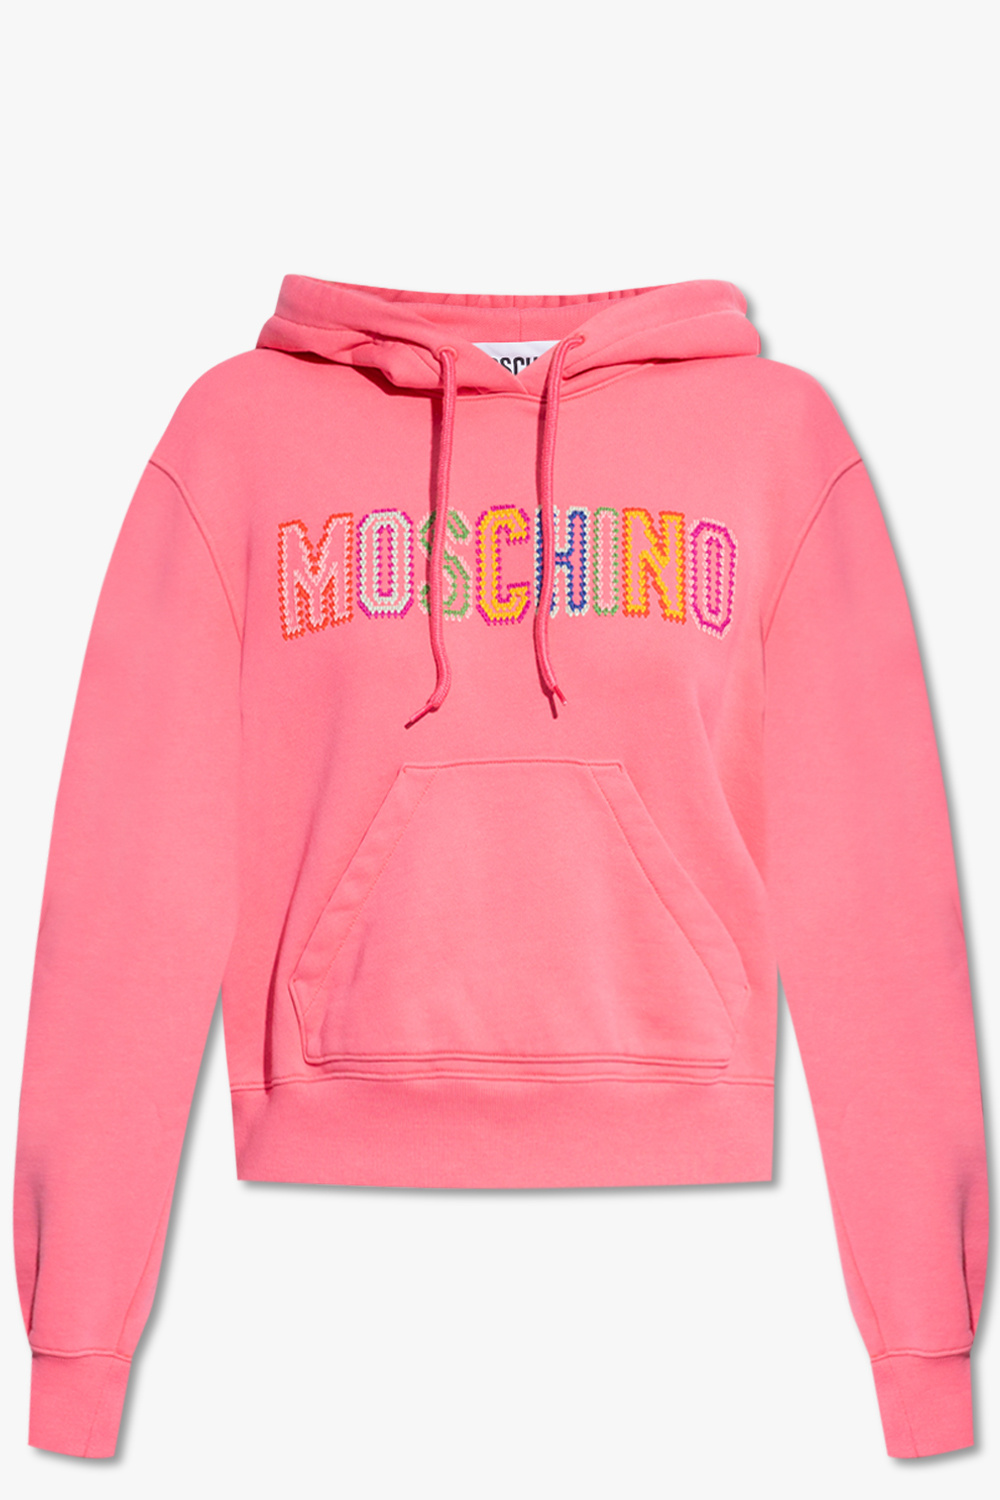 Moschino Women's underwear in cotton jersey Moschino X My Little